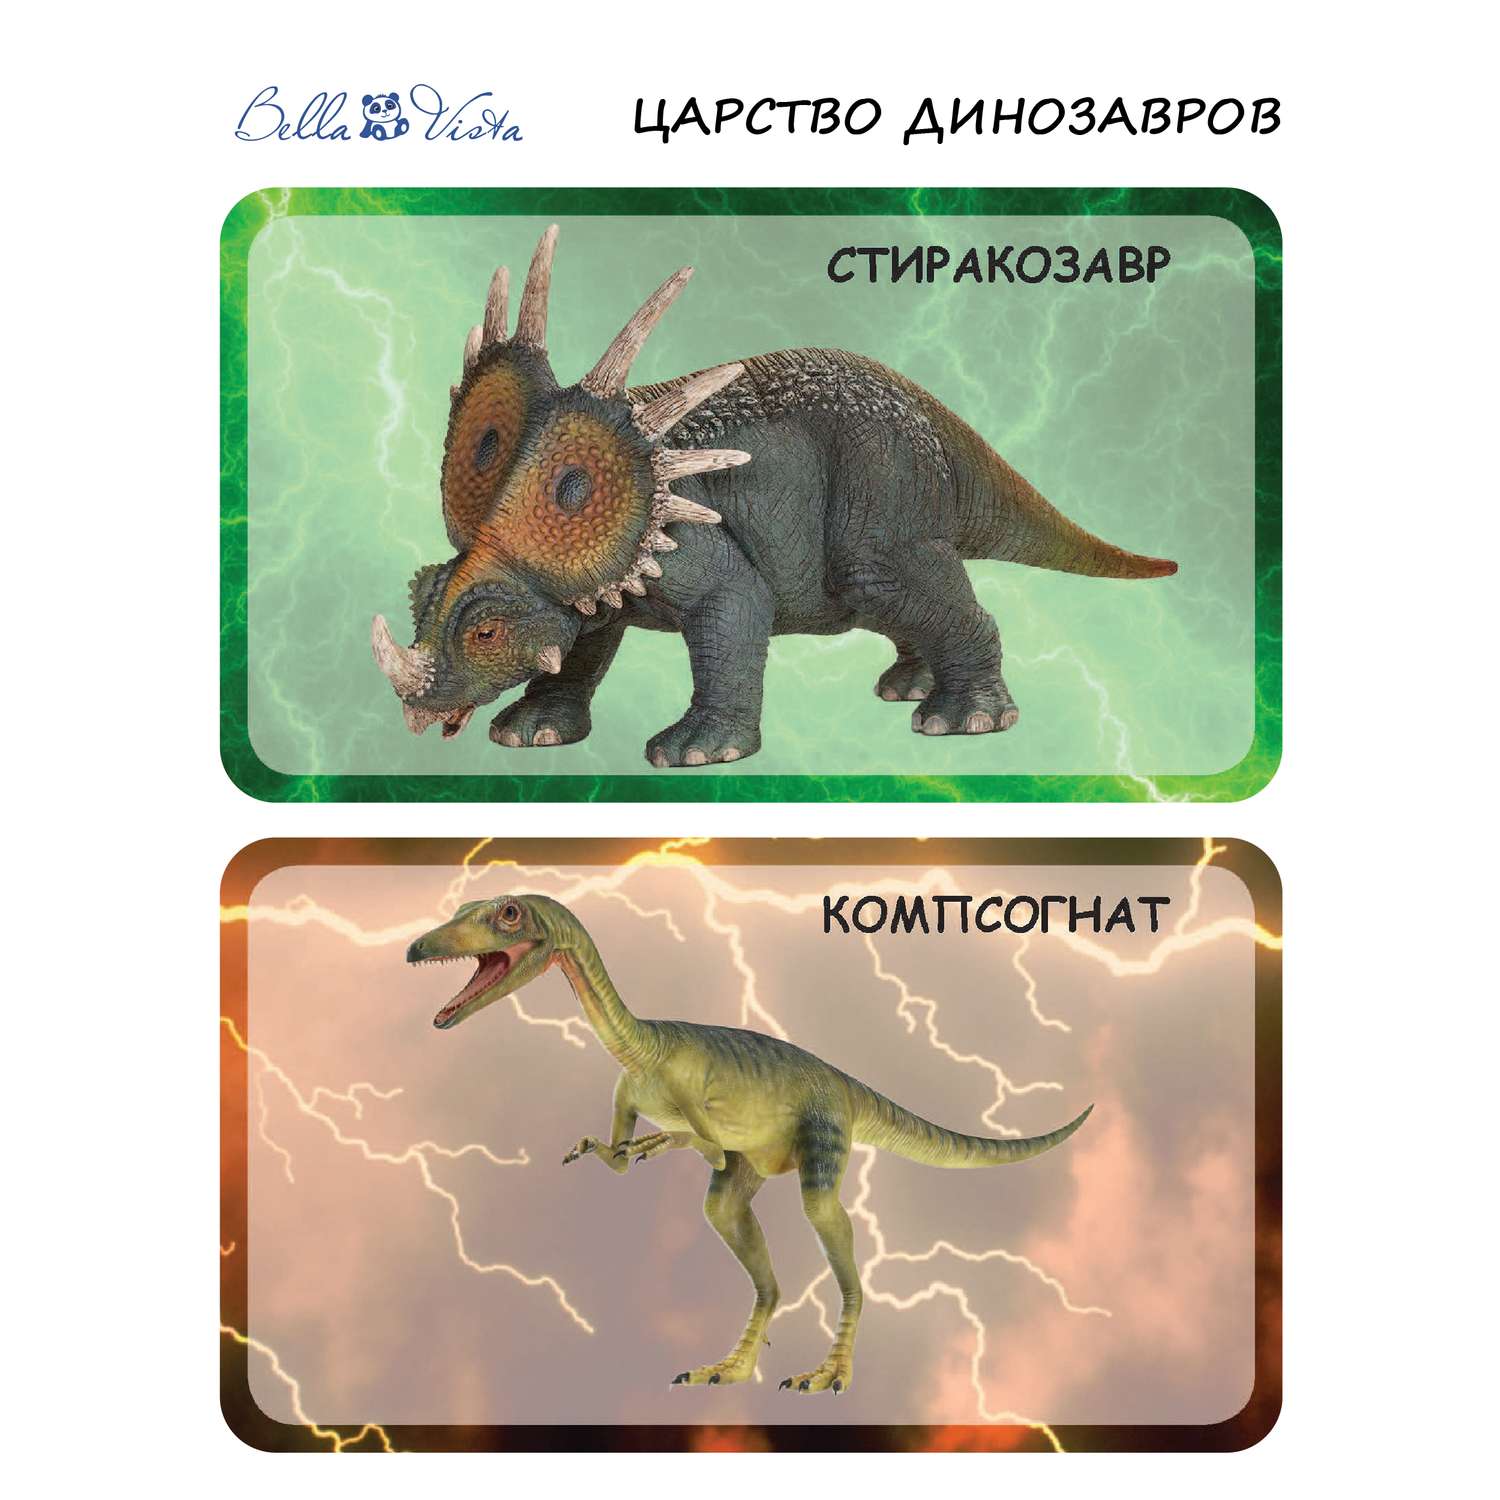 Игра Мемо BELLA VISTA Царство динозавров - фото 13